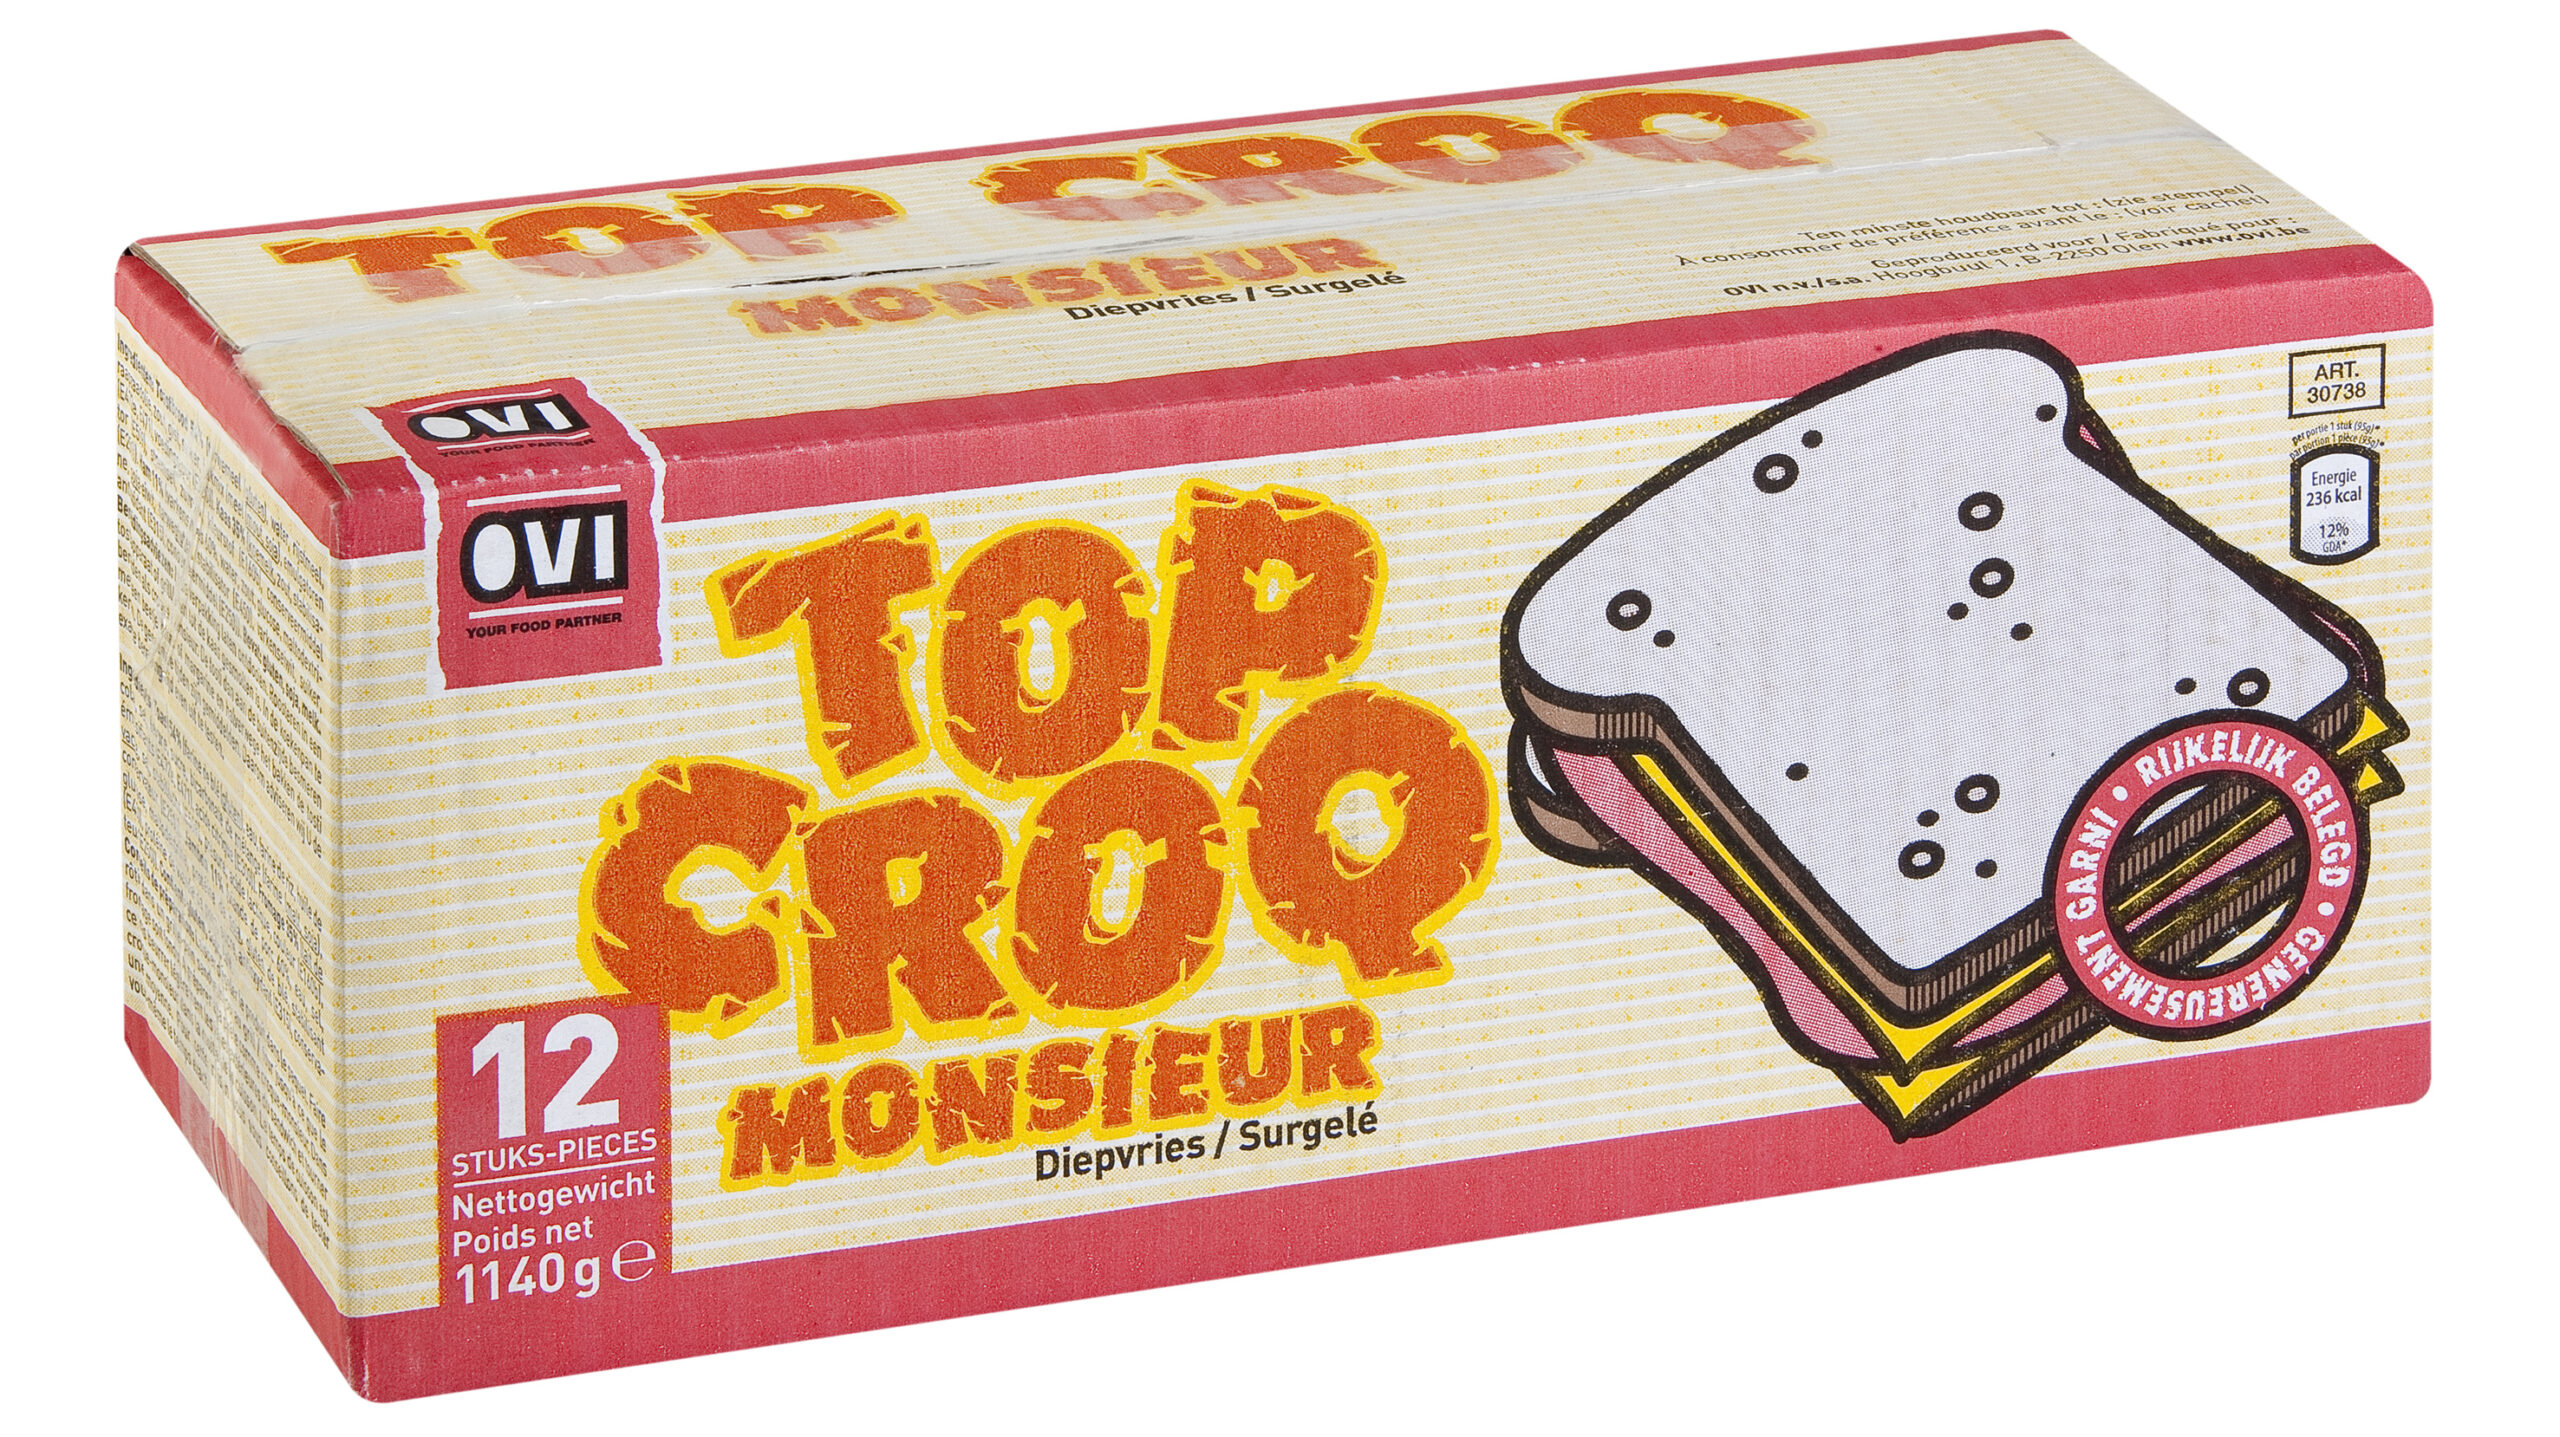 Packshot Top Croq Monsieur 12st